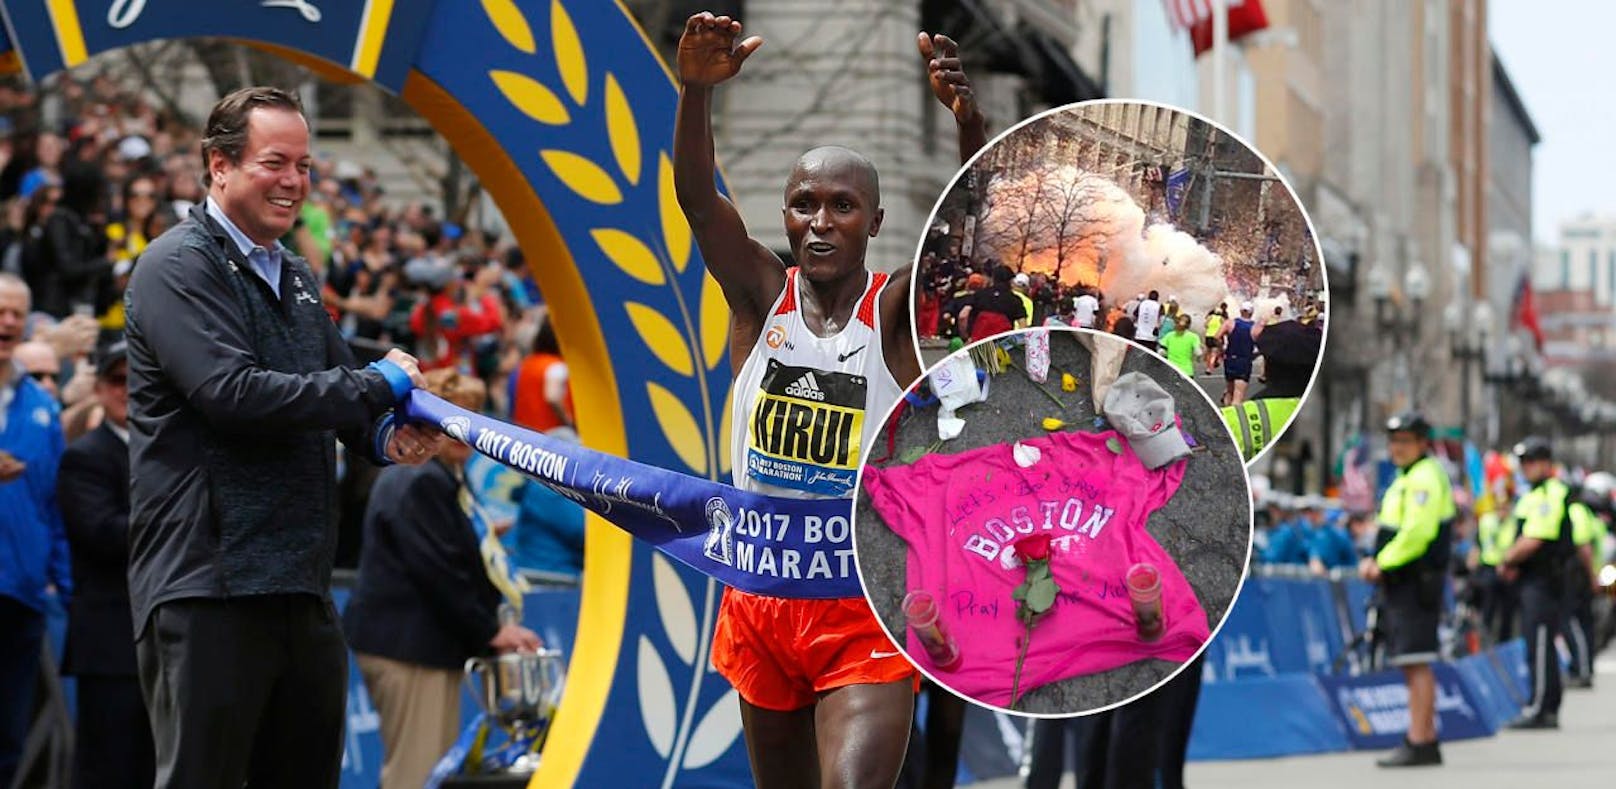 Der Boston Marathon 2017 brachte jede Menge strahlende Sieger. Doch die Erinnerungen an den Anschlag 2013 waren allgegenwärtig - nur bei Adidas nicht. 